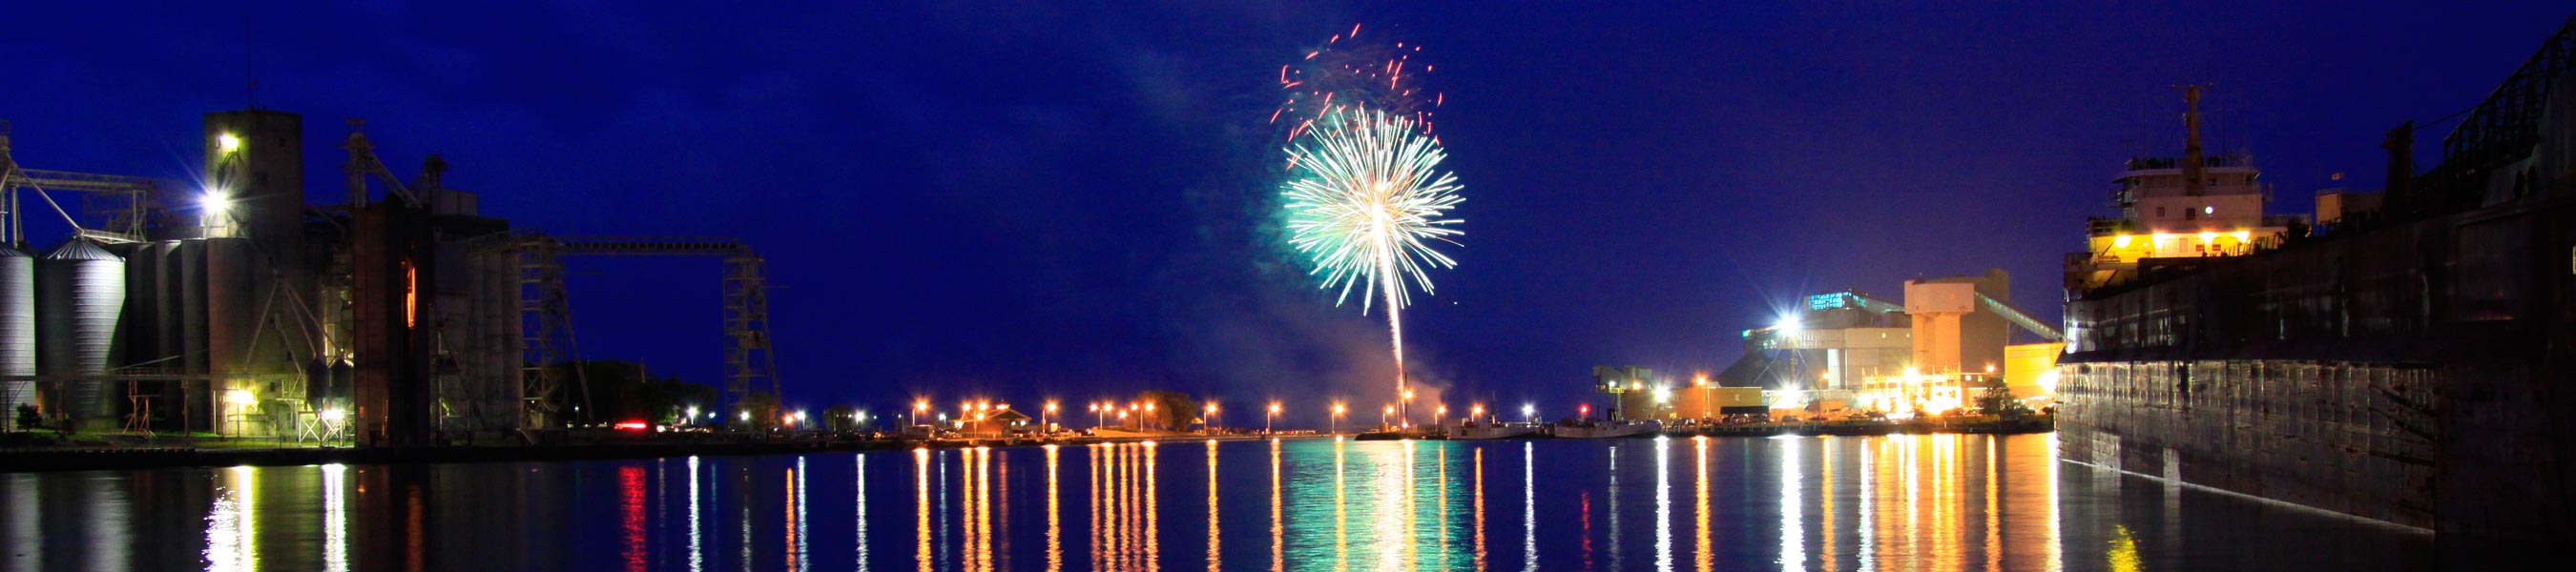 Fireworks Image slider